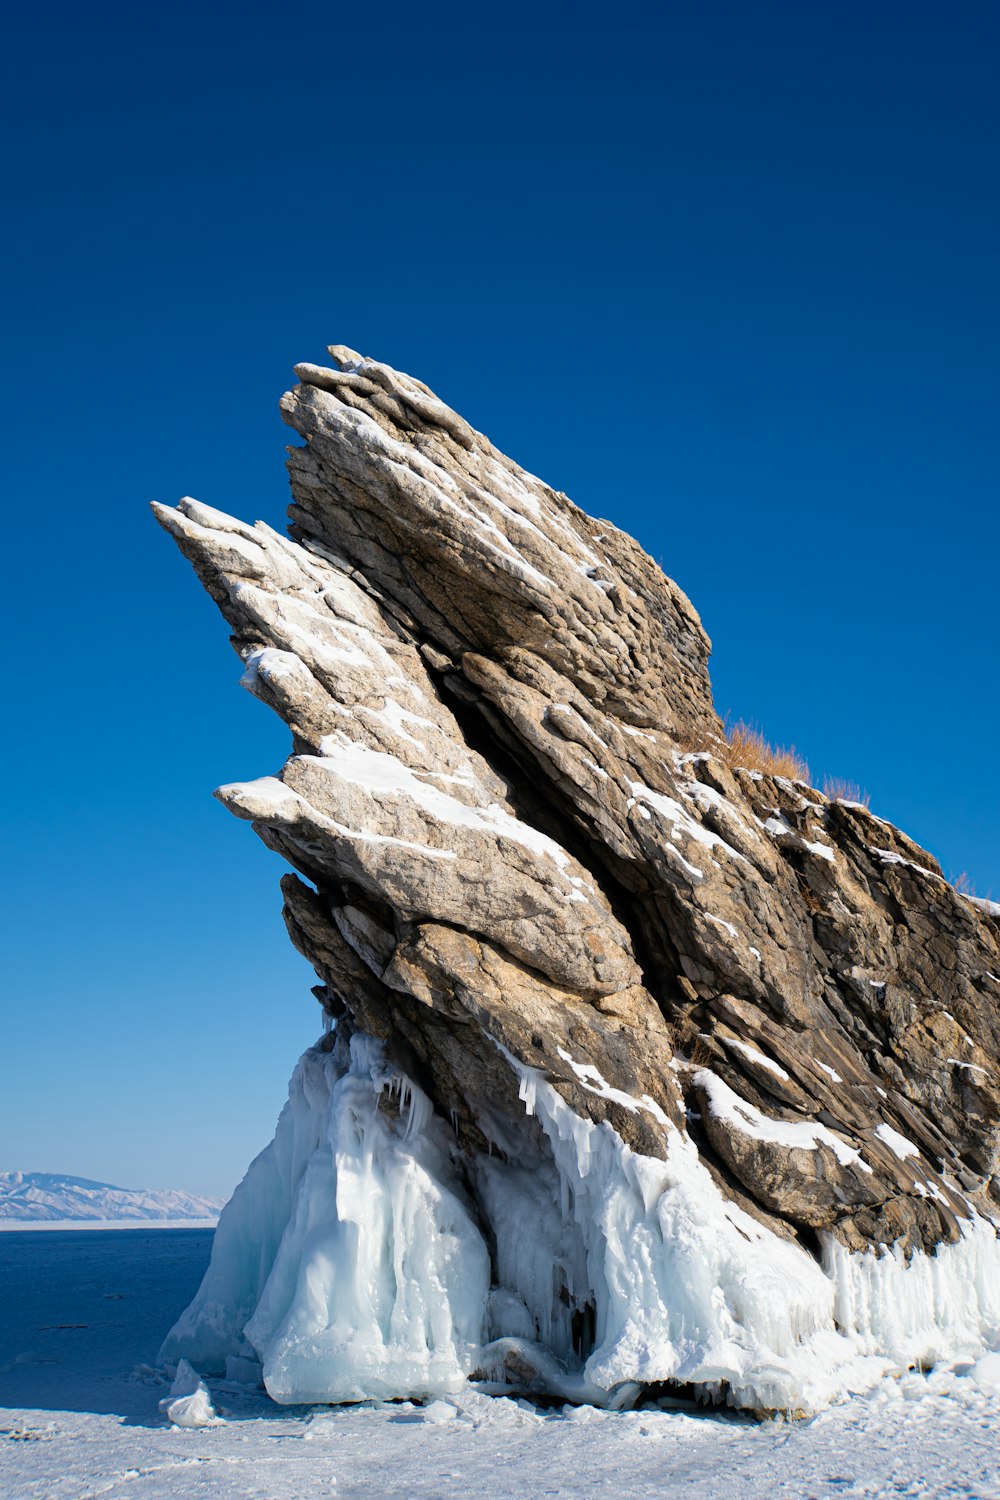 Una gran formación rocosa hecha de hielo y nieve